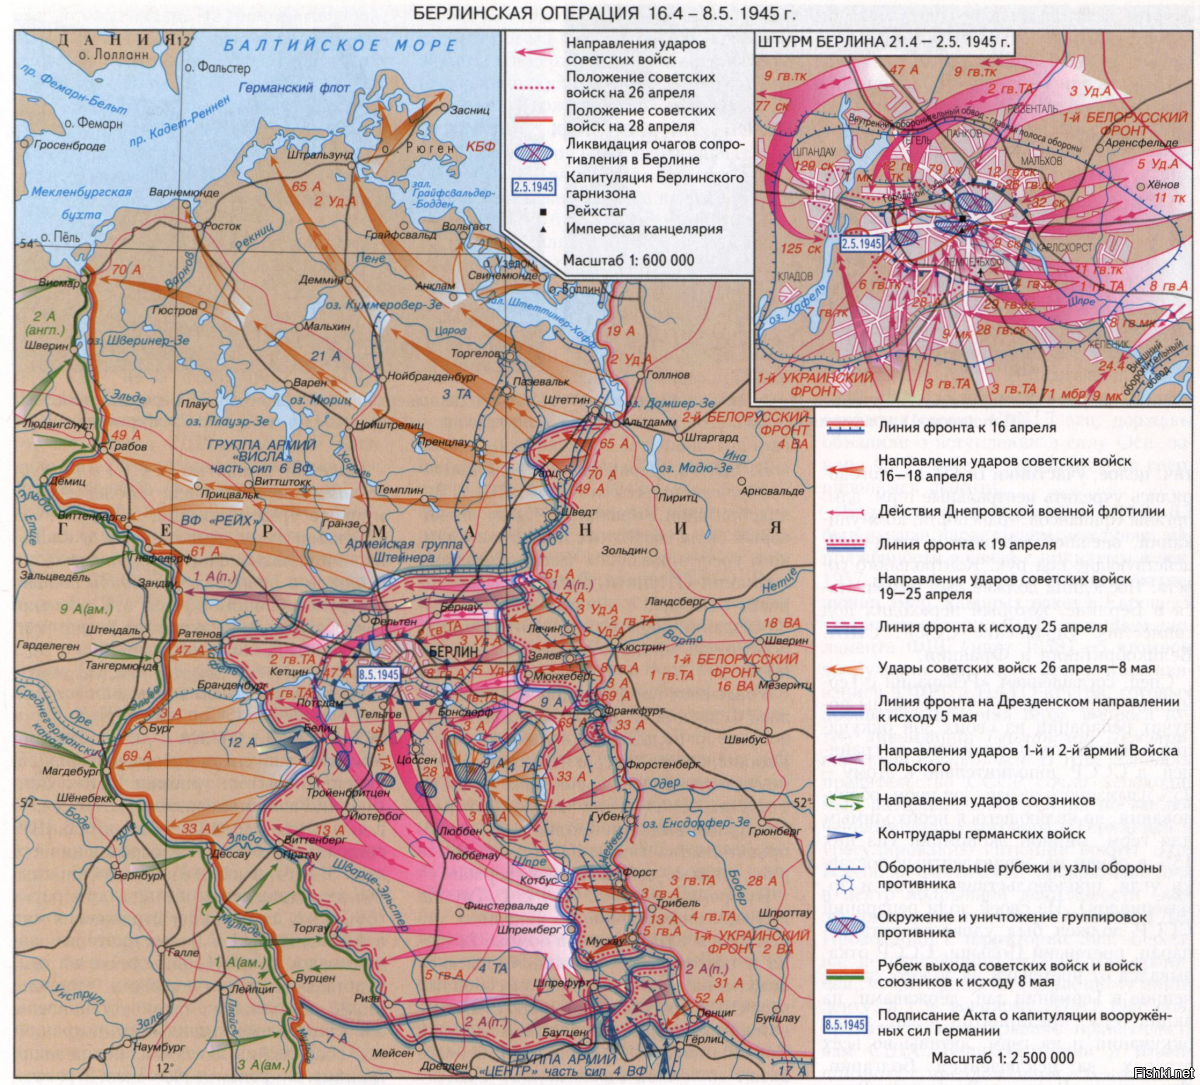 4 берлинская операция. Берлинская операция 1945 г карта. Операция Берлин 1945 карта. Карта Берлинской операции 1945 года. Карта Берлинской операции 16 апреля- 8 мая 1945.